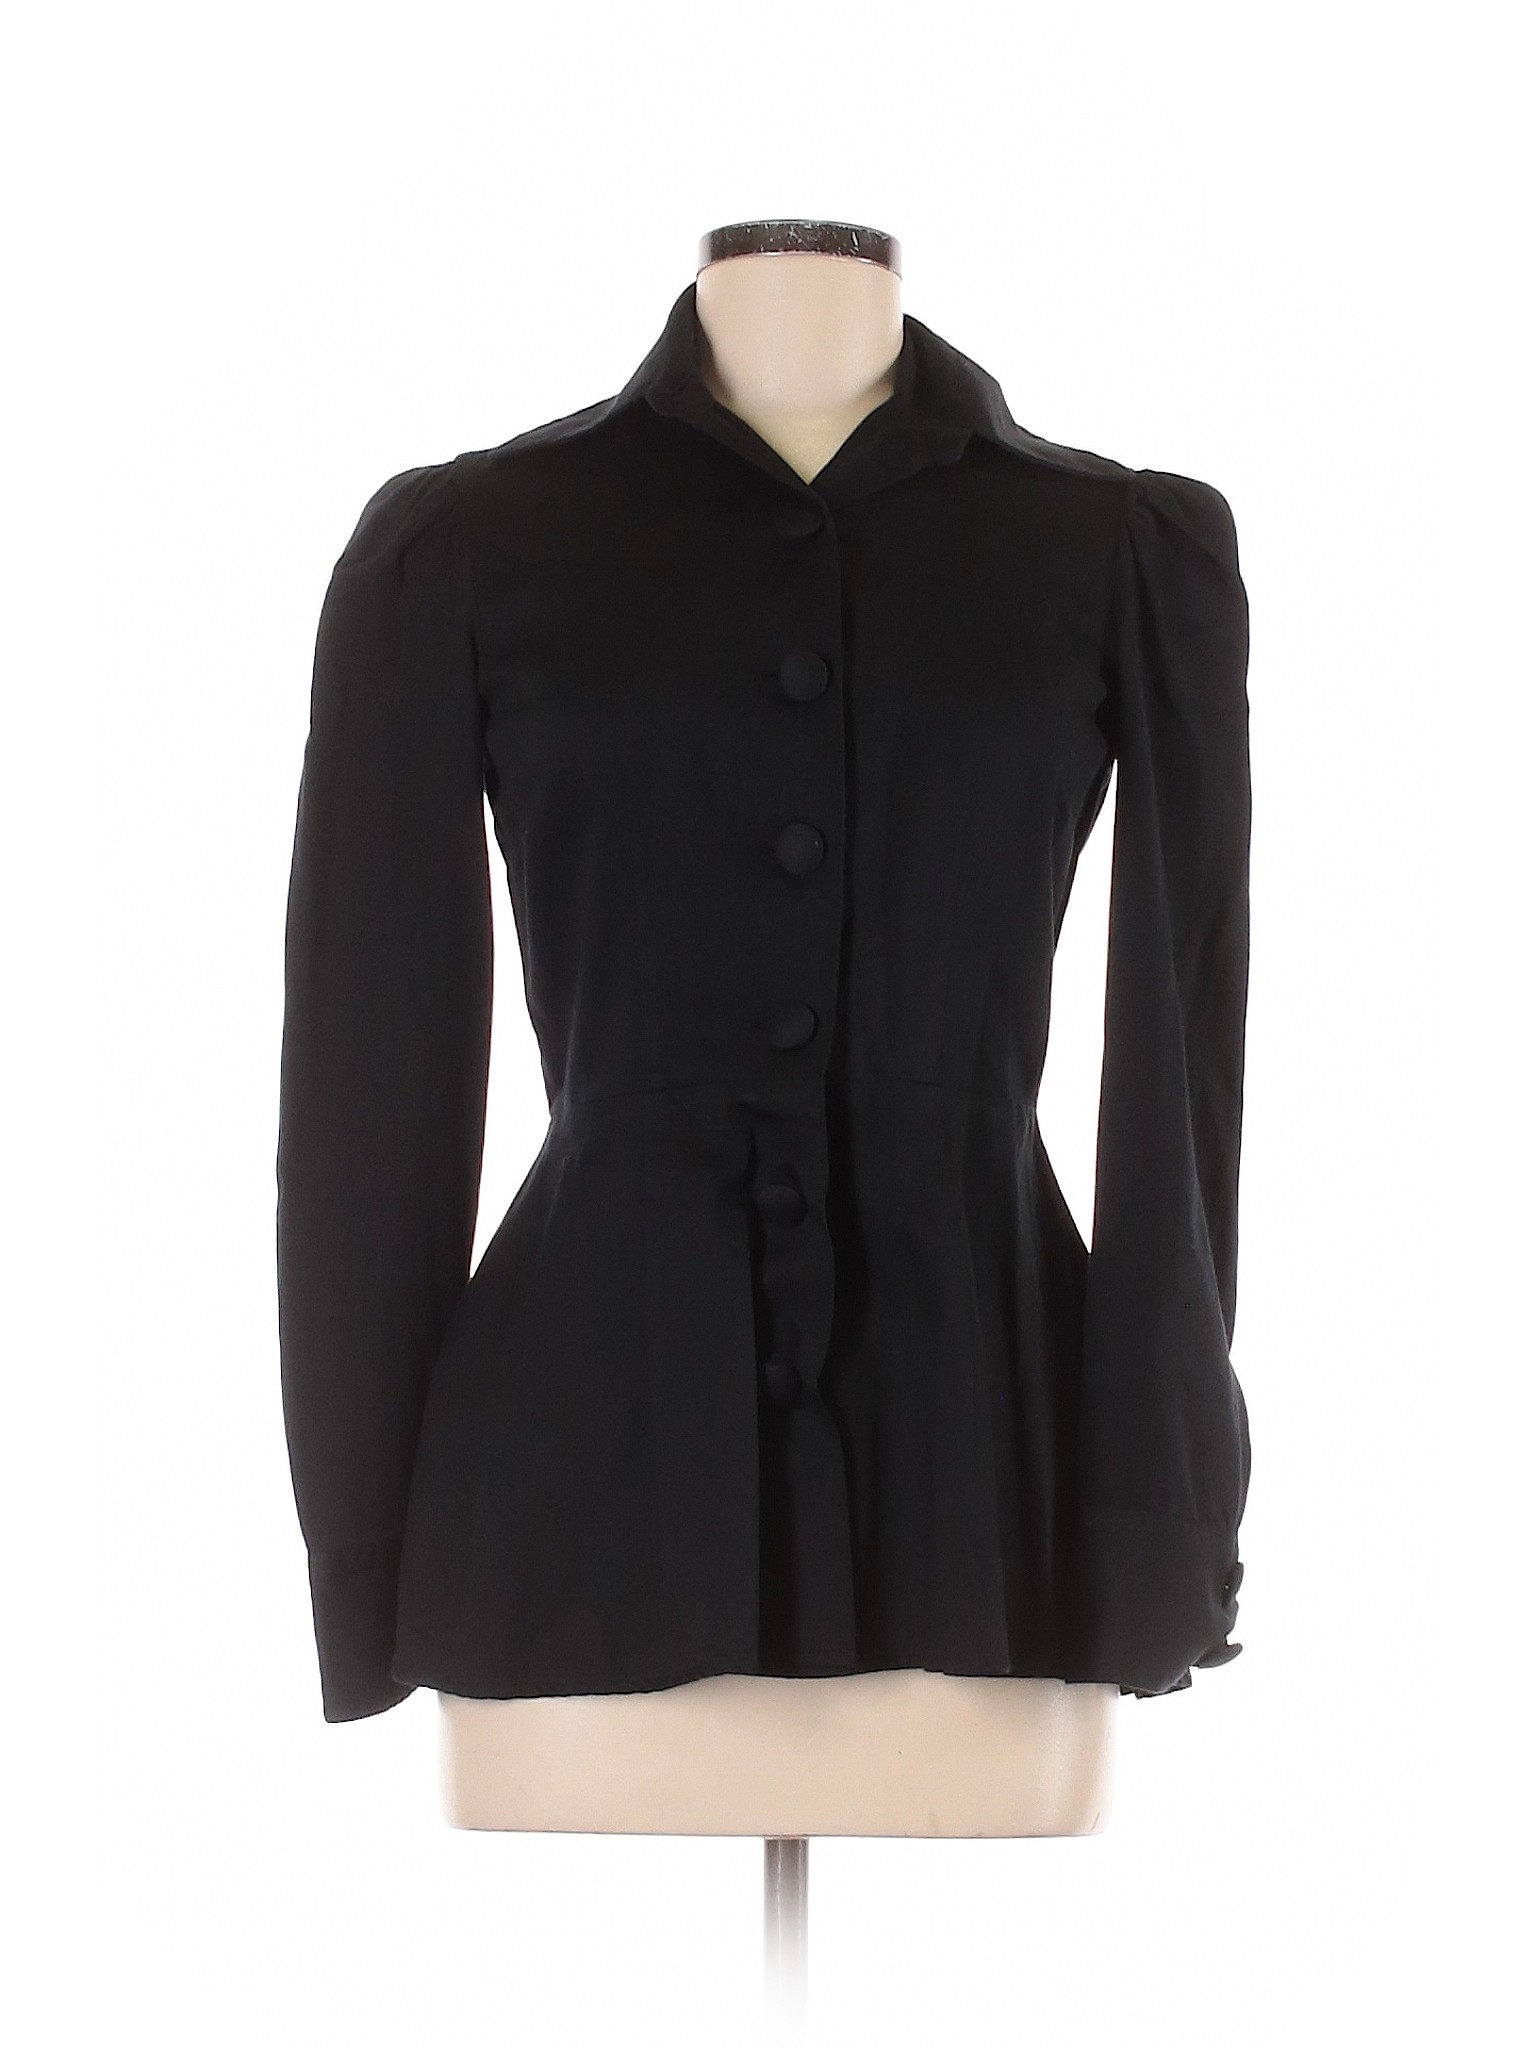 The J. Peterman Co. Women Black Jacket 2 | eBay